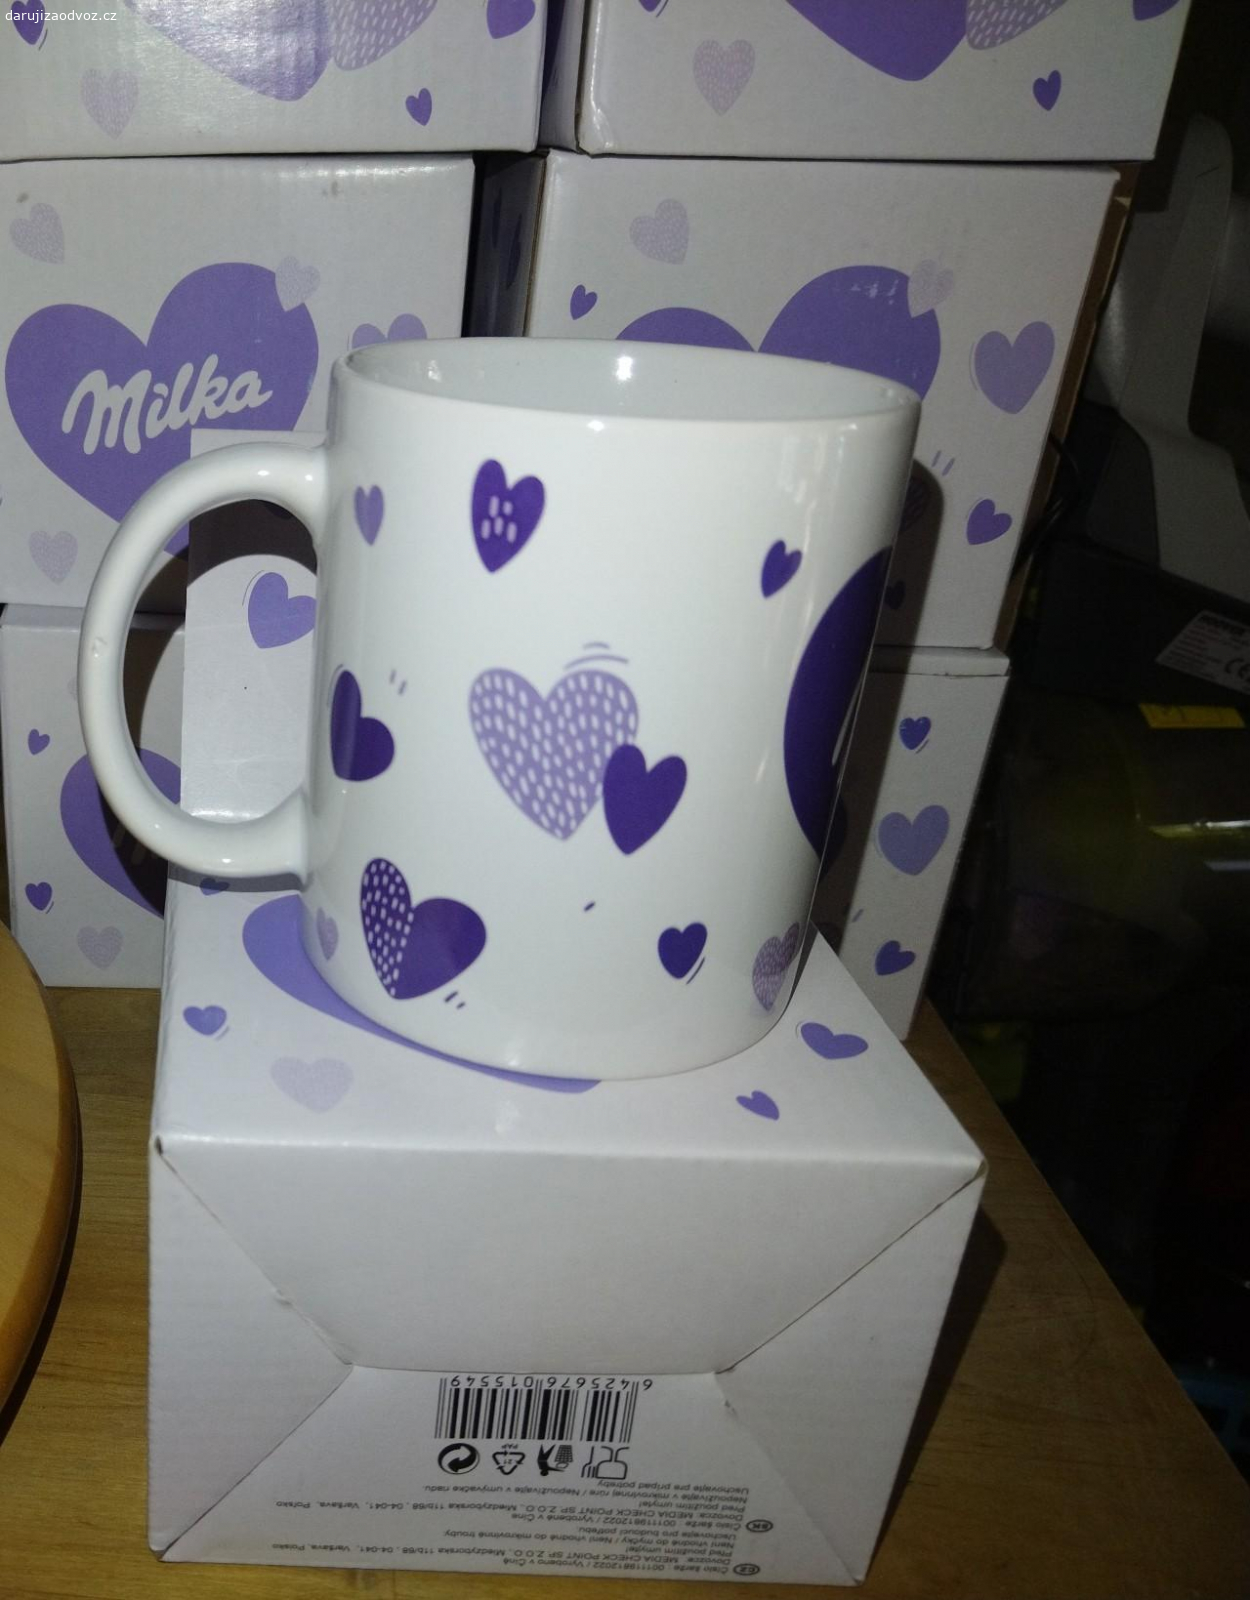 Nový hrnek Milka s krabičkou. Nabízím nový hrnek Milka s originál krabičkou, předám v Praze 10 Strašnice, čokoláda Milka potěší, není podmínkou.